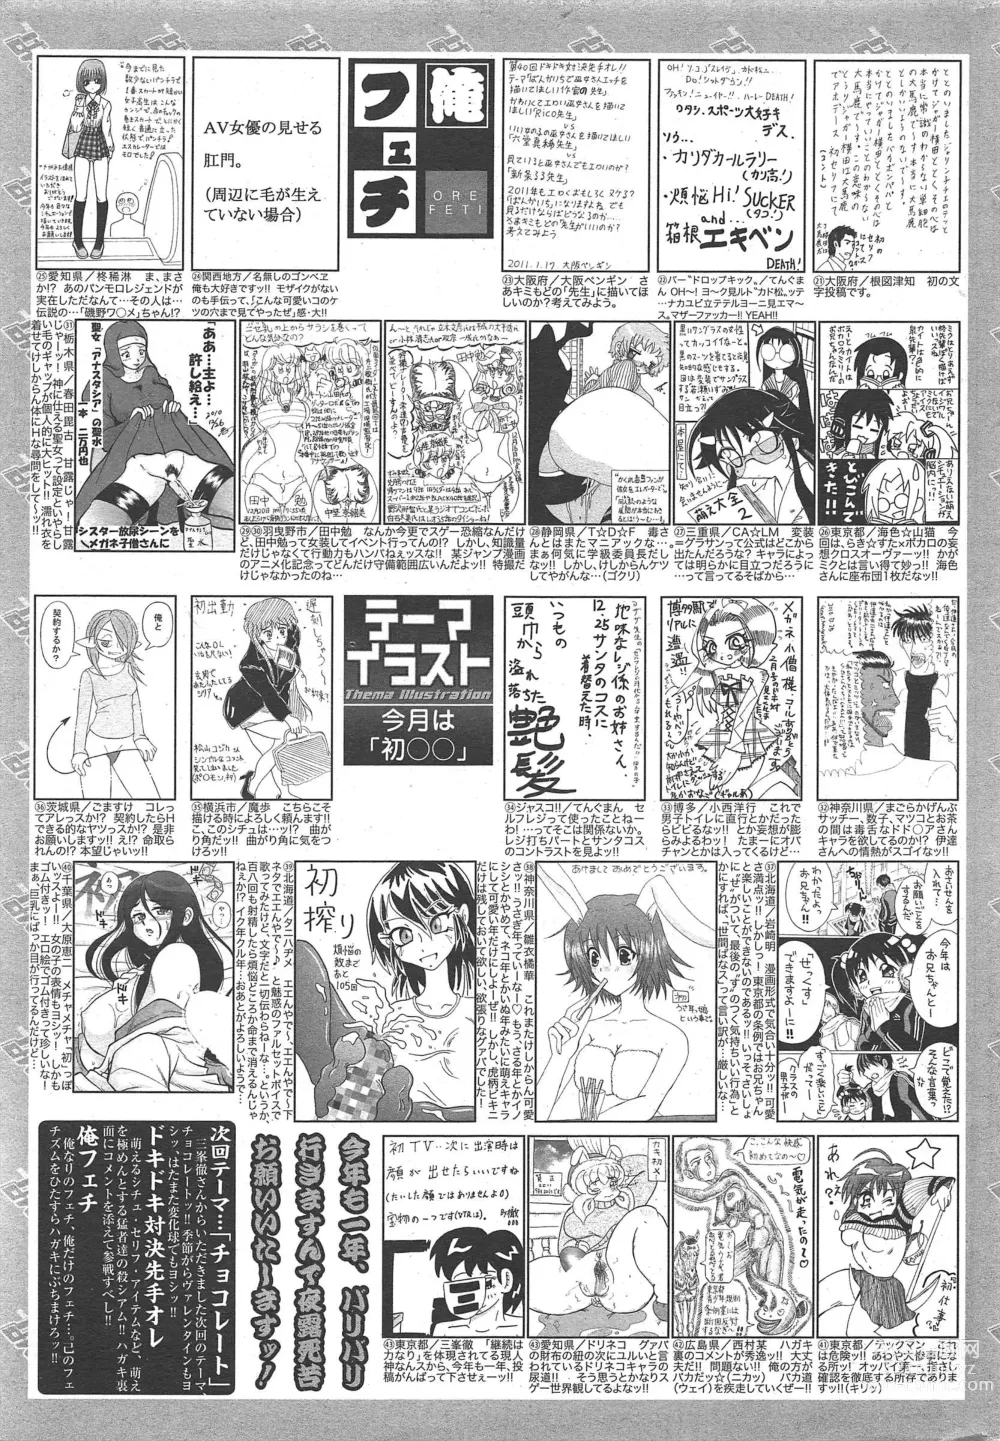 Page 261 of manga Manga Bangaichi 2011-03